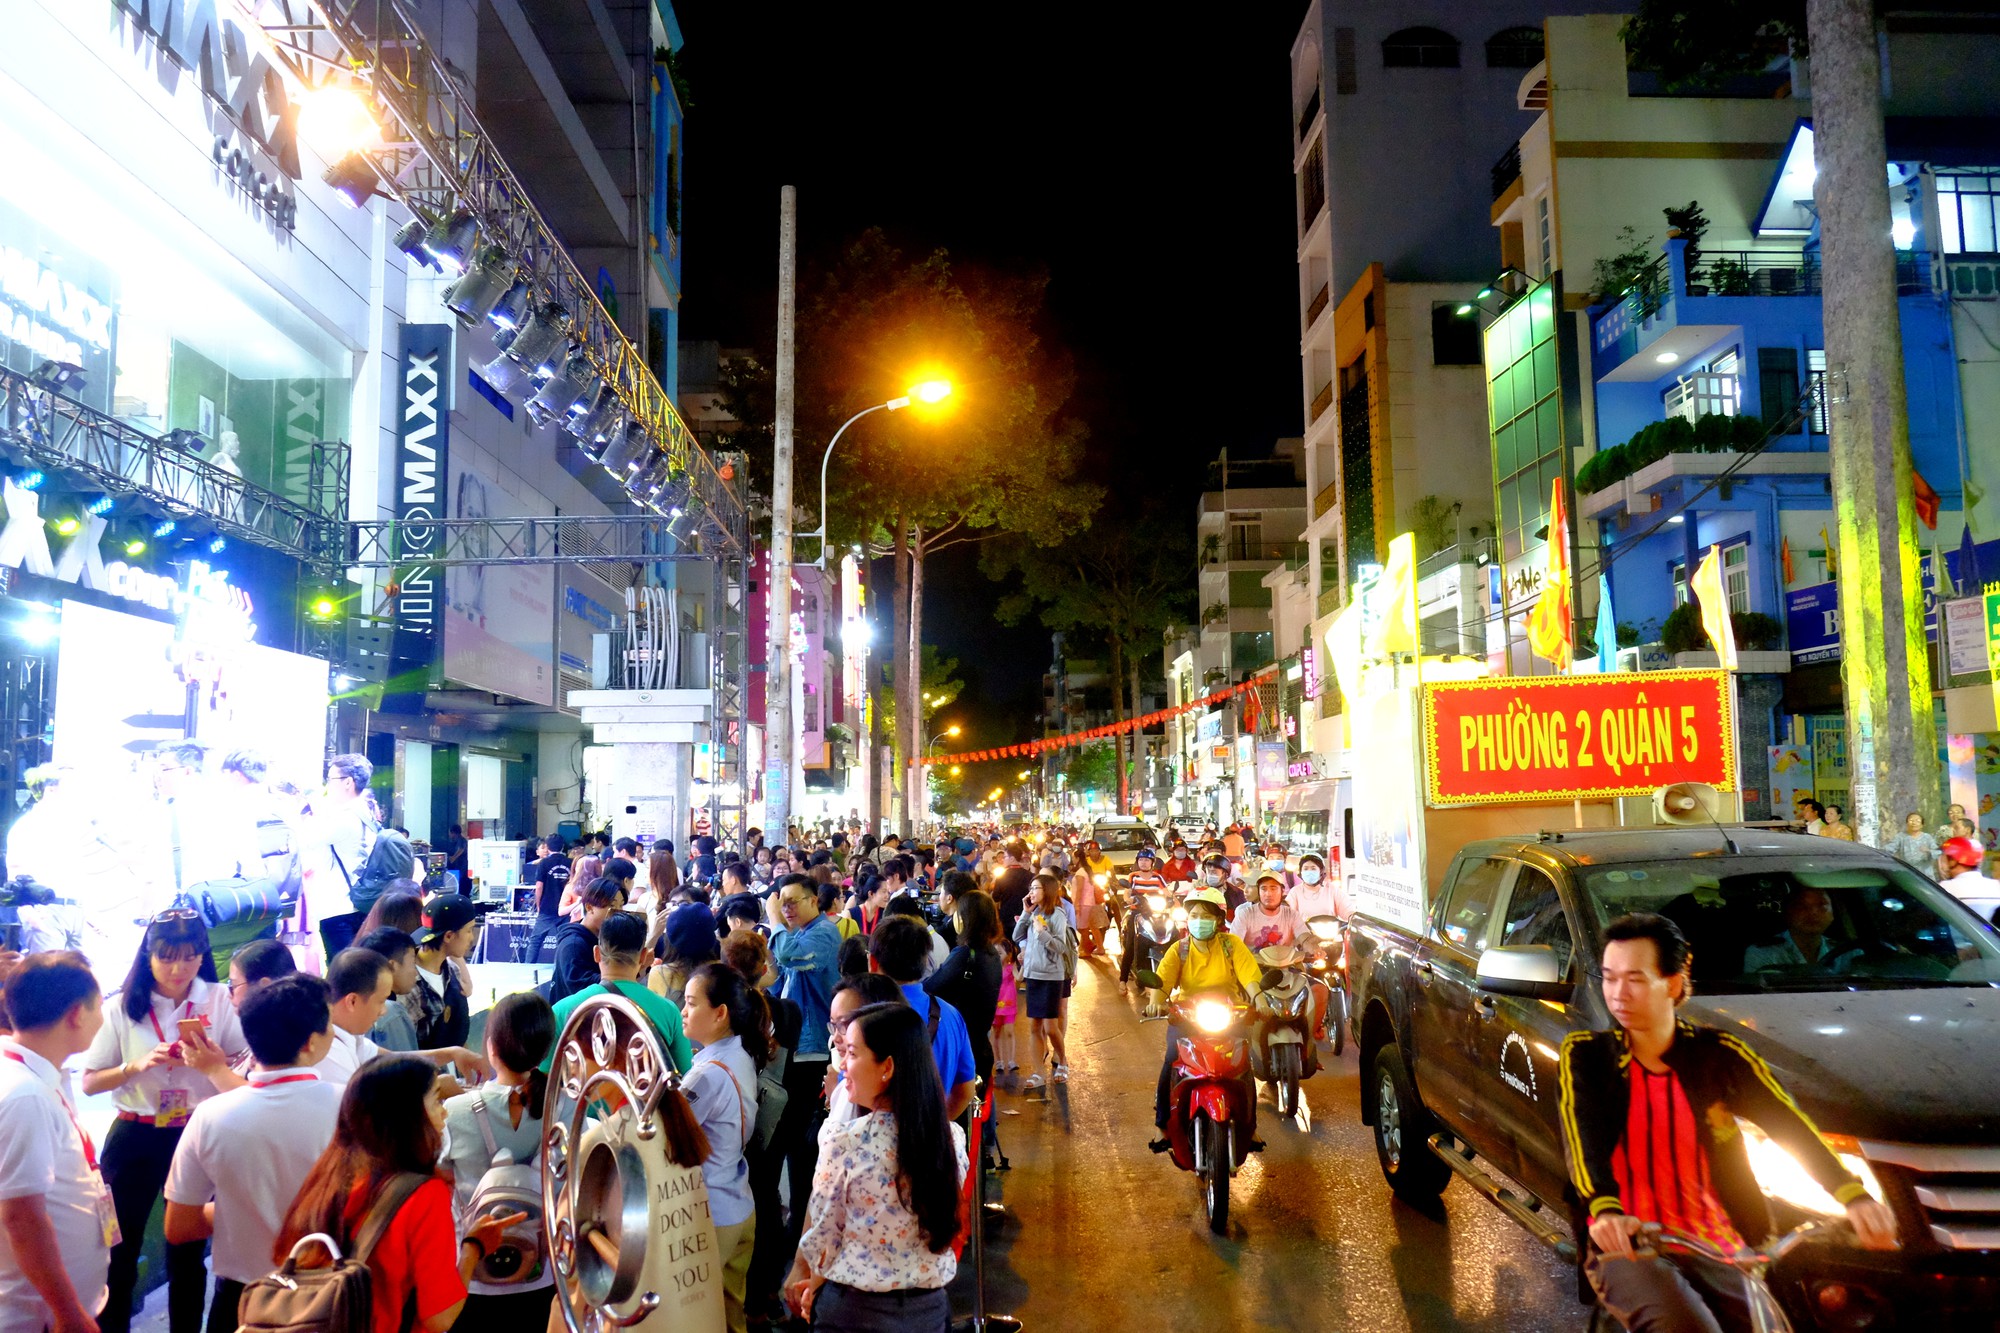 Sài Gòn đã có Phố thời trang ở Quận 5, thu hút giới trẻ và nhiều gia đình đến mua sắm